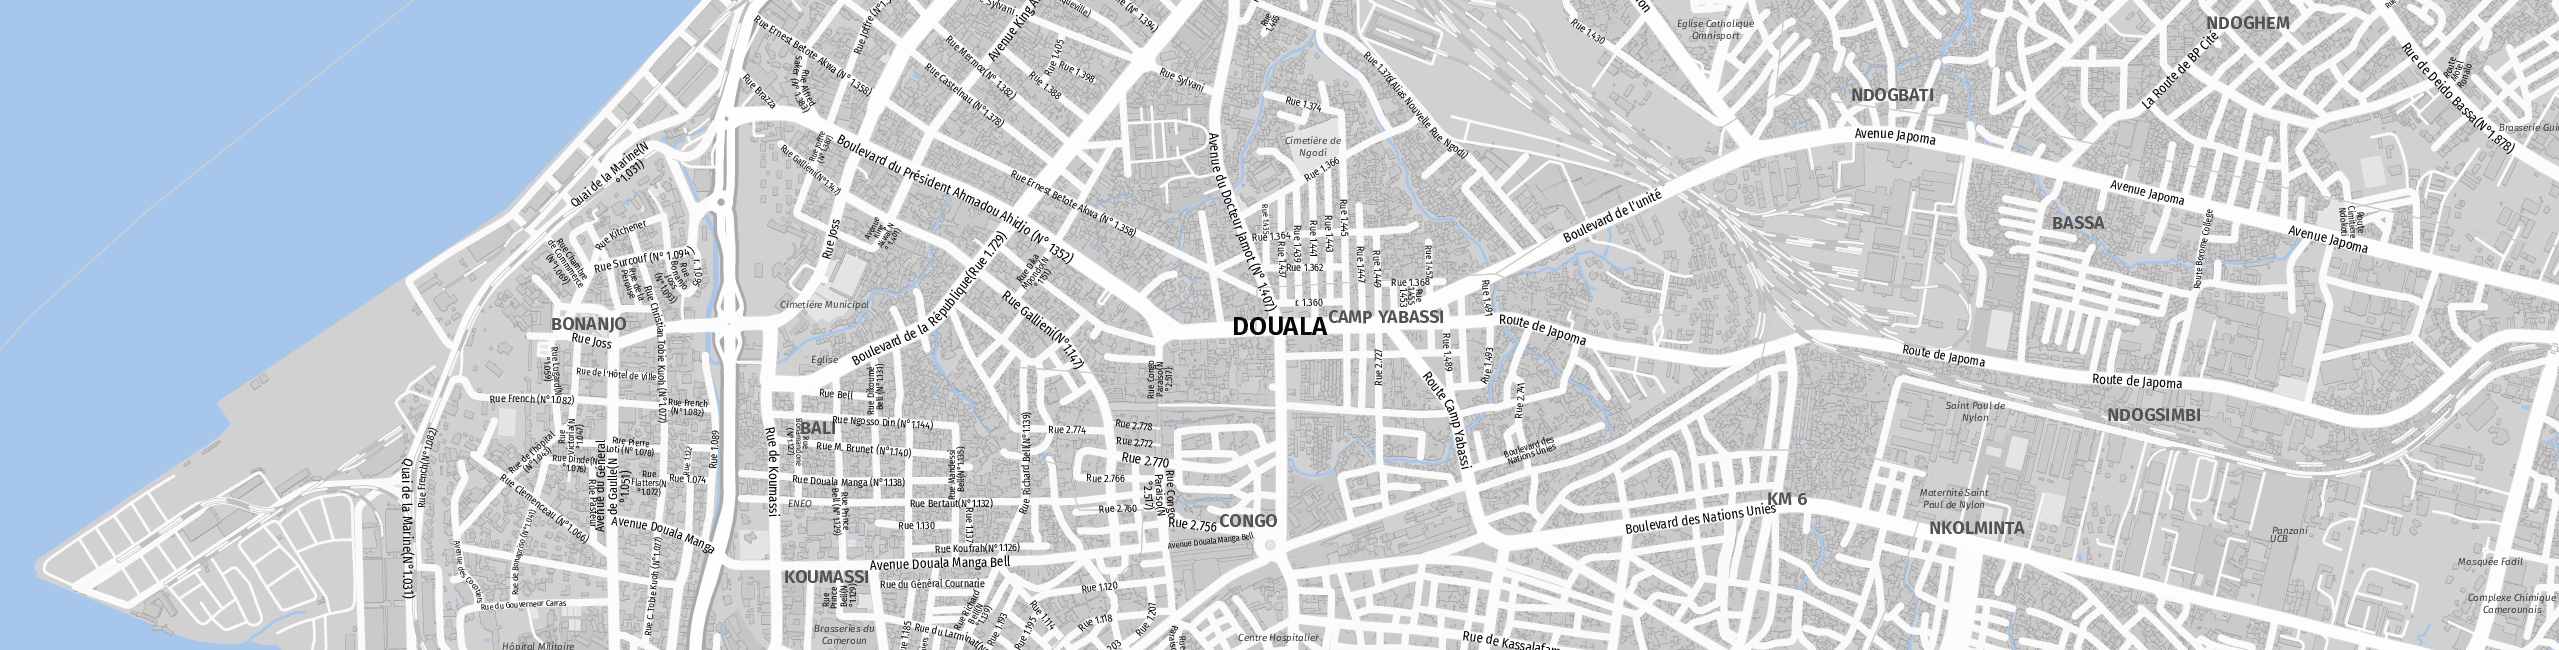 Stadtplan Douala zum Downloaden.